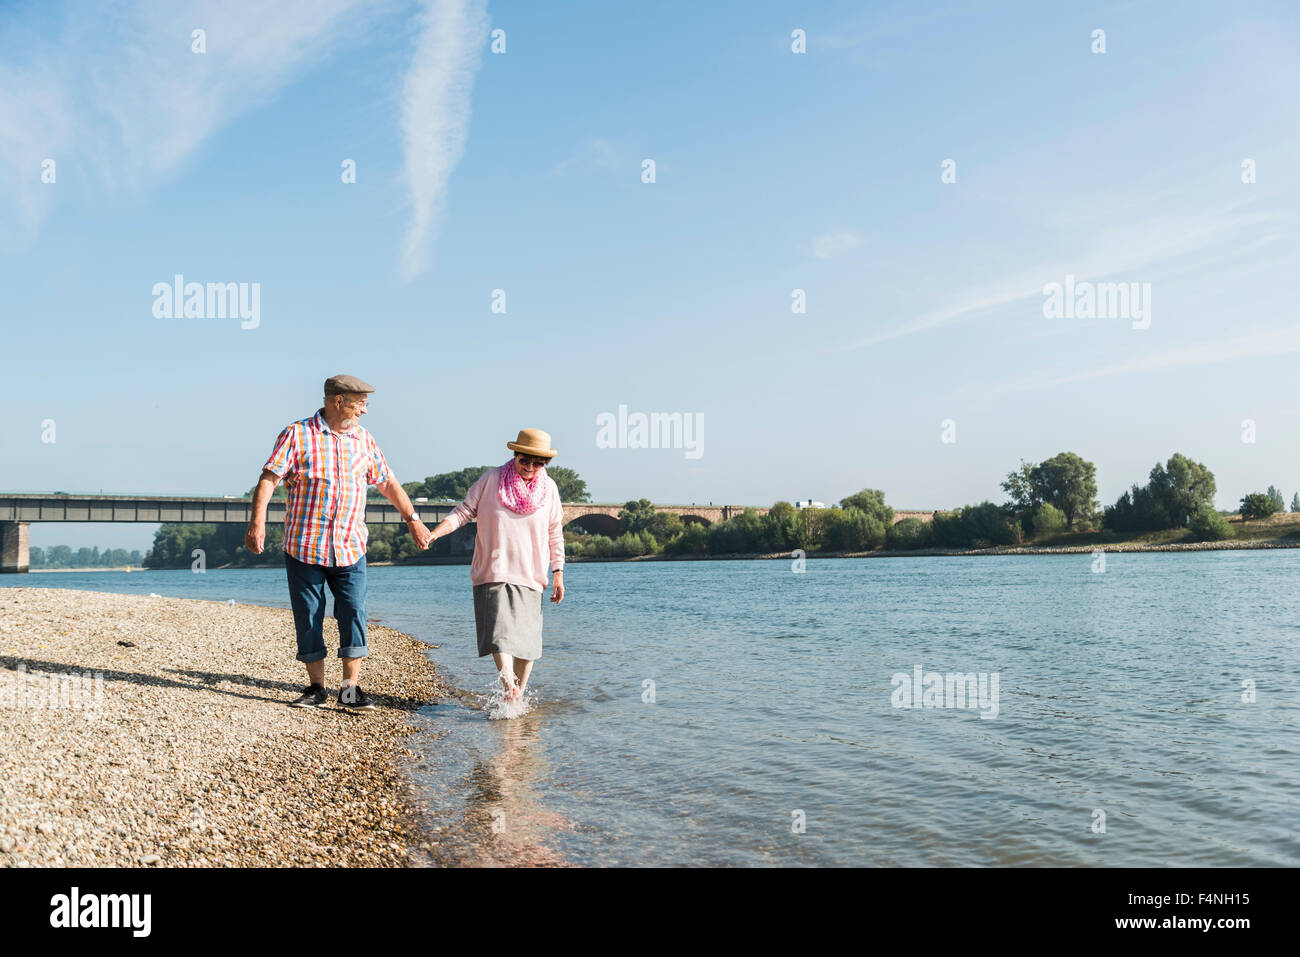 Germania, Ludwigshafen, felice coppia senior camminando mano nella mano al Riverside Foto Stock